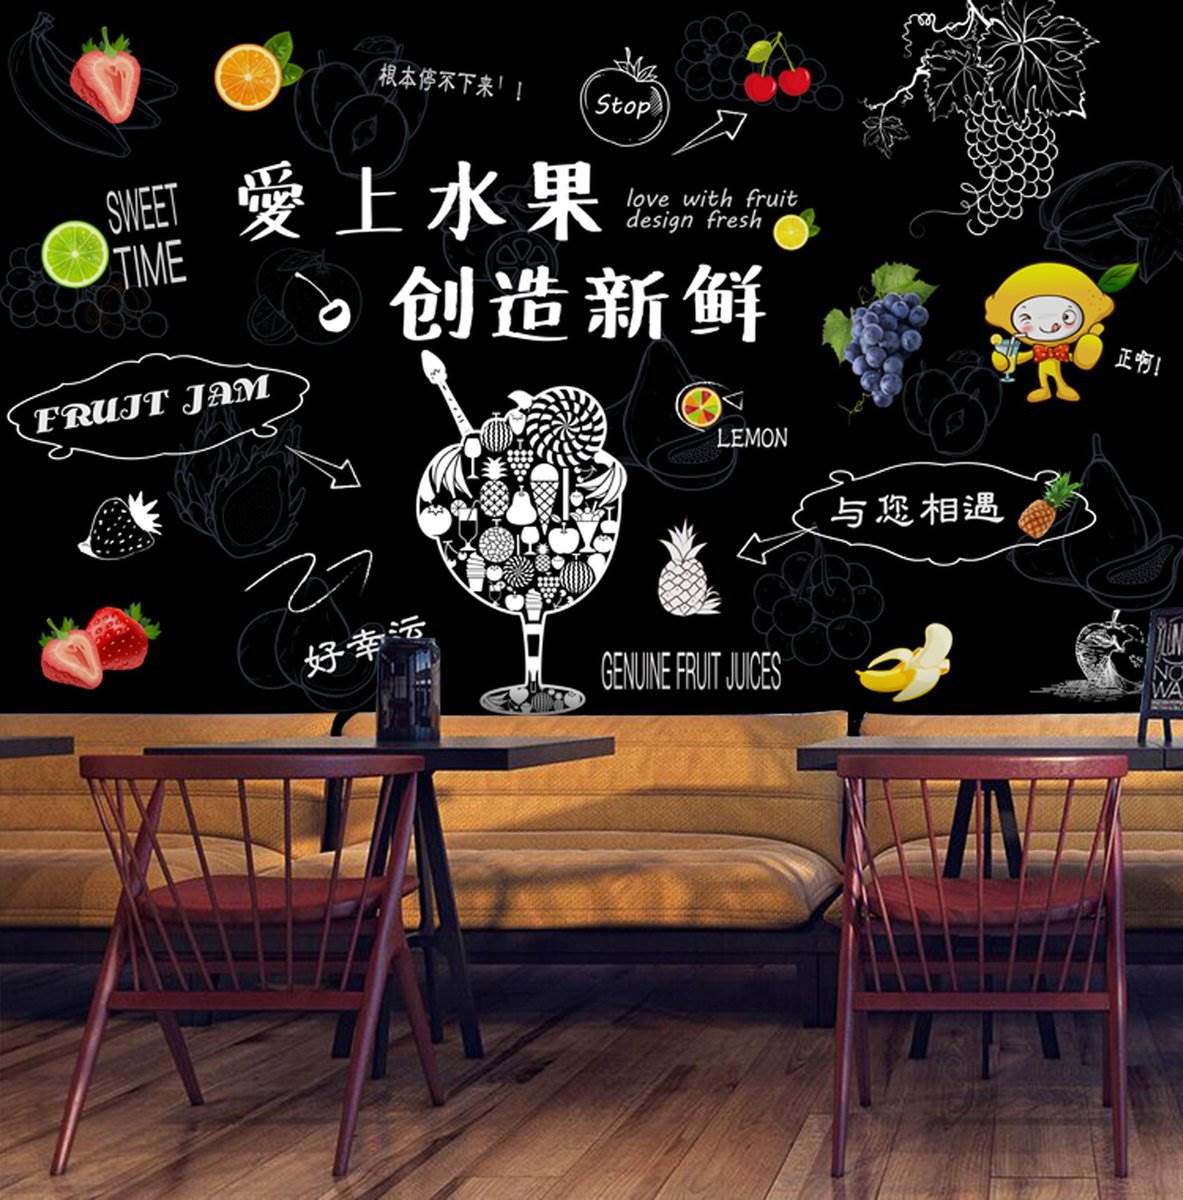 收银台吧台促销小黑板留言板桌面立式宣传摆摊广告板手绘黑板生鲜水果